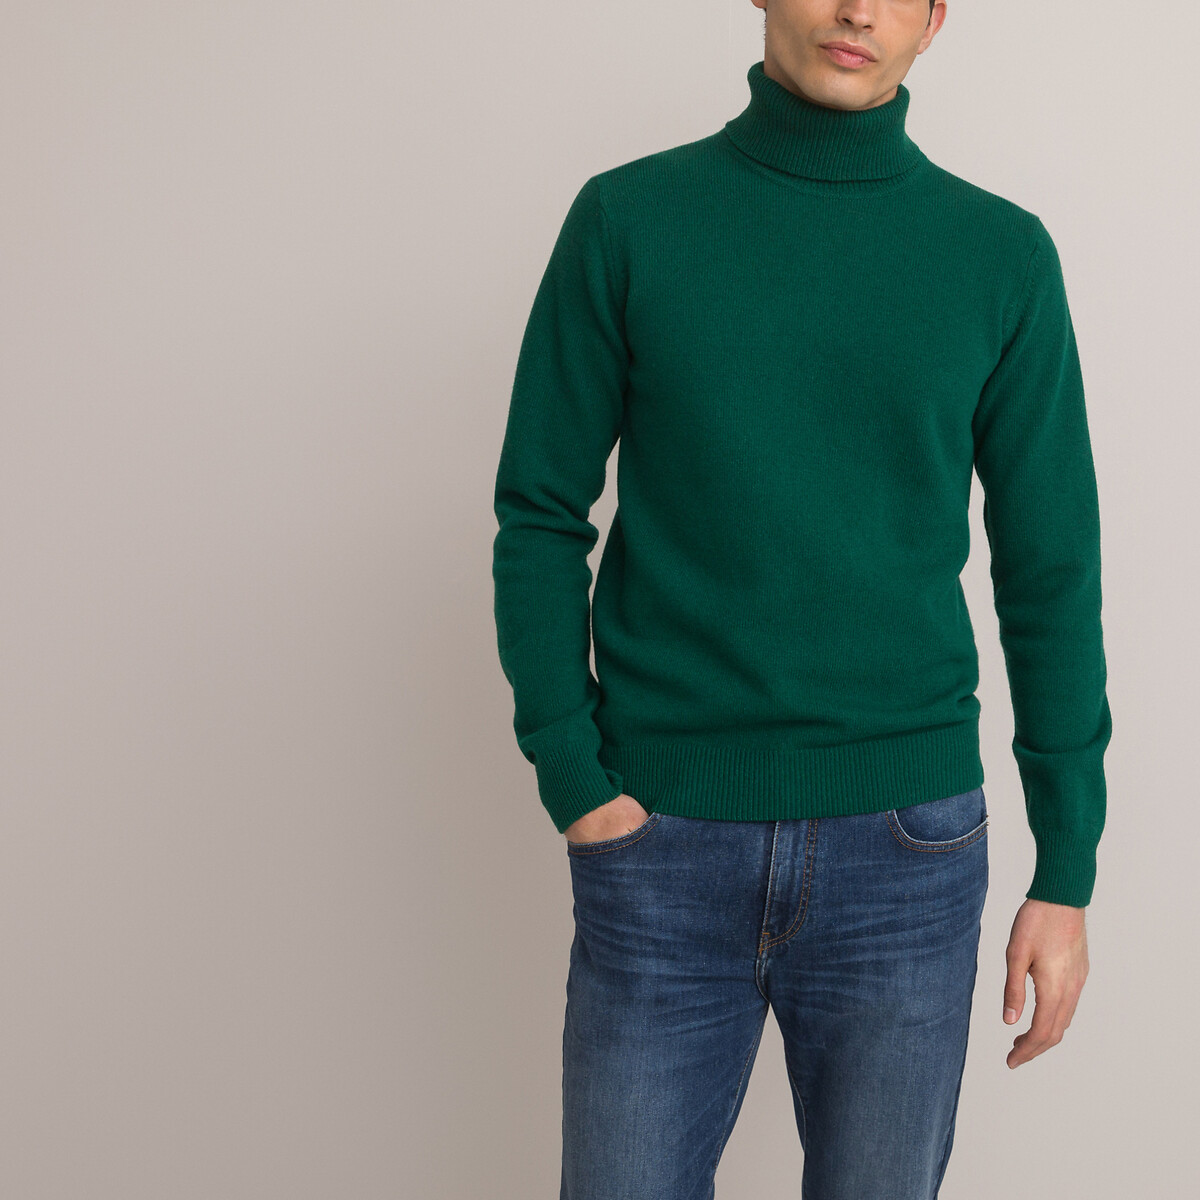 Пуловер с высоким воротником Signature из овечьей шерсти M зеленый джемпер премиум класса из овечьей шерсти с высоким воротником uniqlo оранжевый